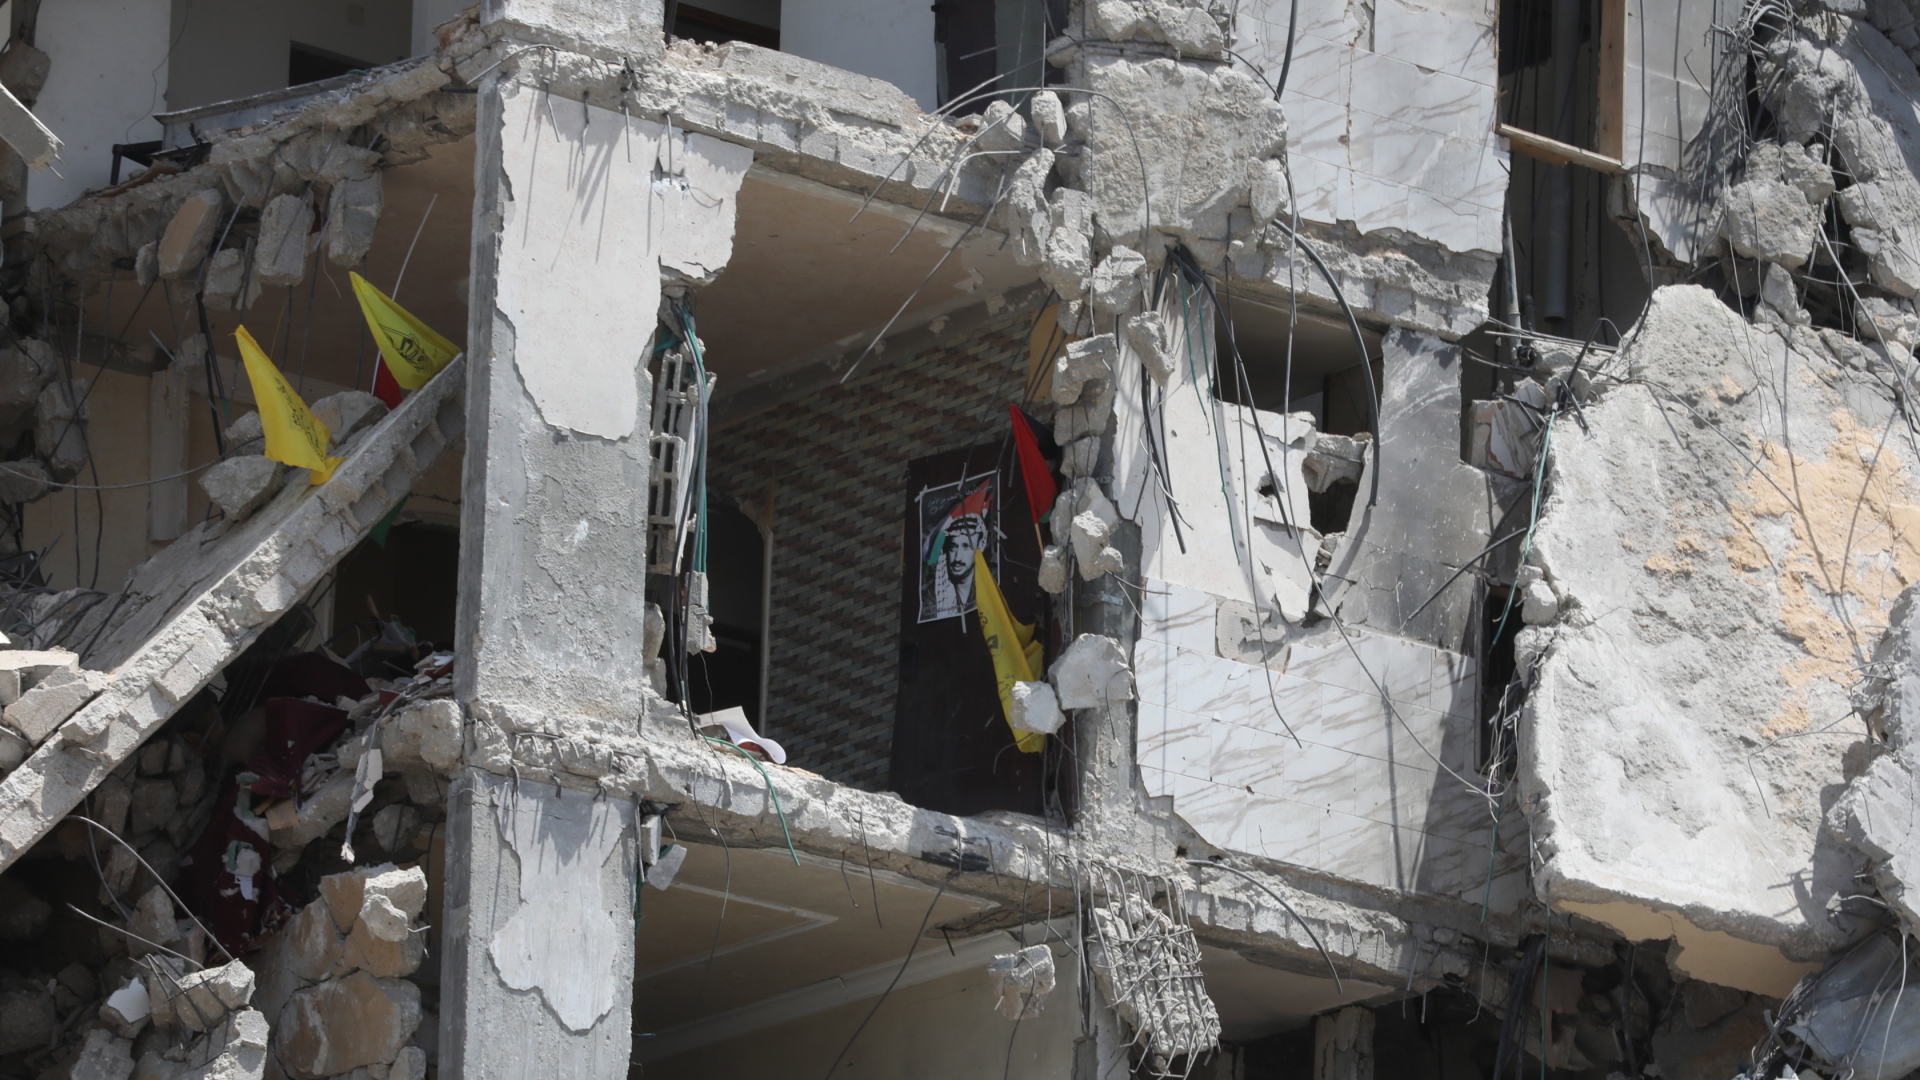  Ein Plakat und Fahnen hängen in einem zerstörten Gebäude im Norden eines Flüchtlingslagers im Gazastreifen (Archivbild).